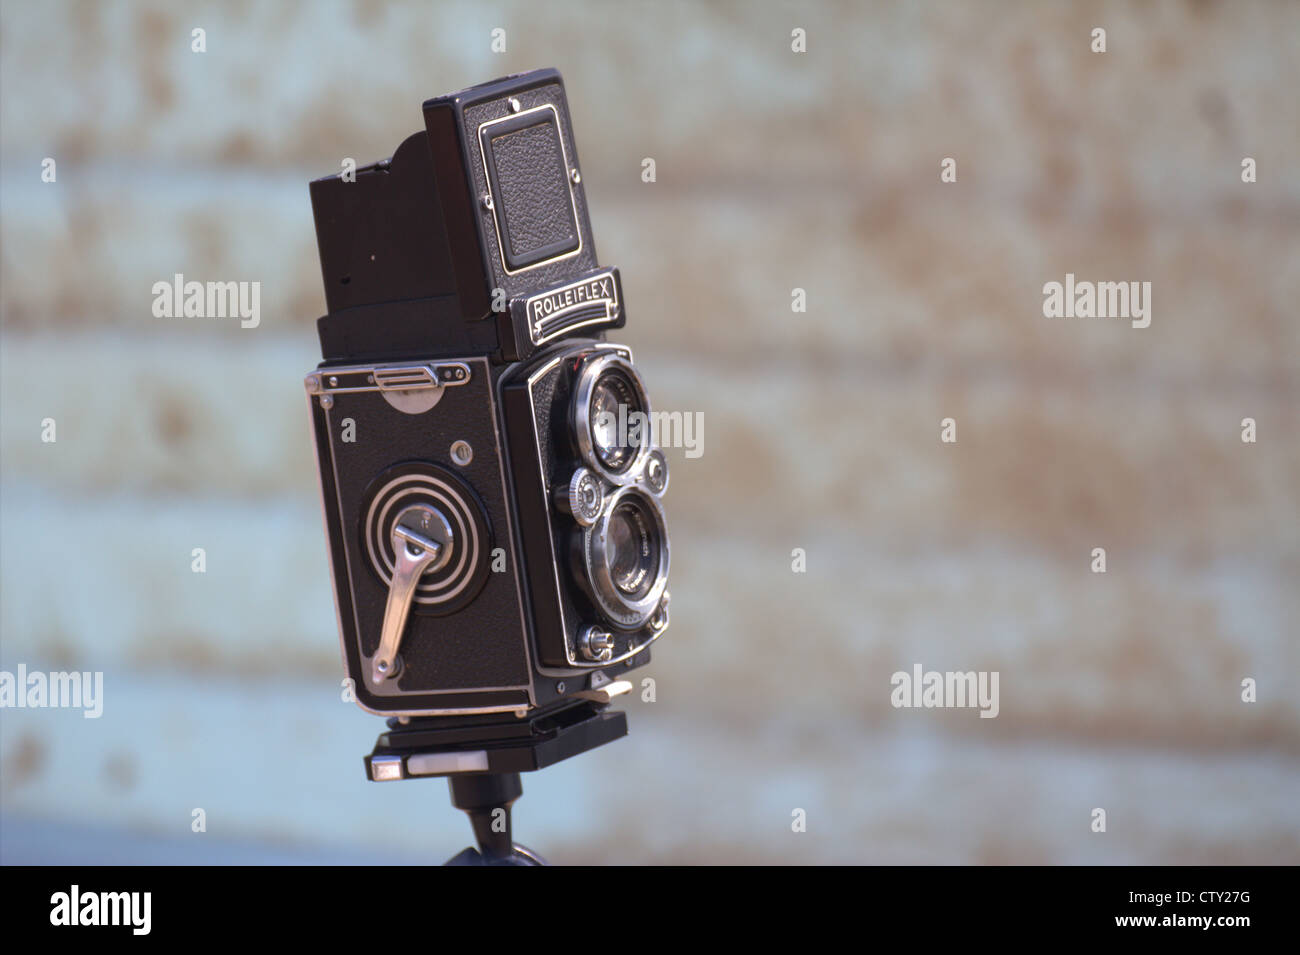 Eine alte Rolleiflex Kamera gegen einen blassen blauen distressed Hintergrund. Stockfoto